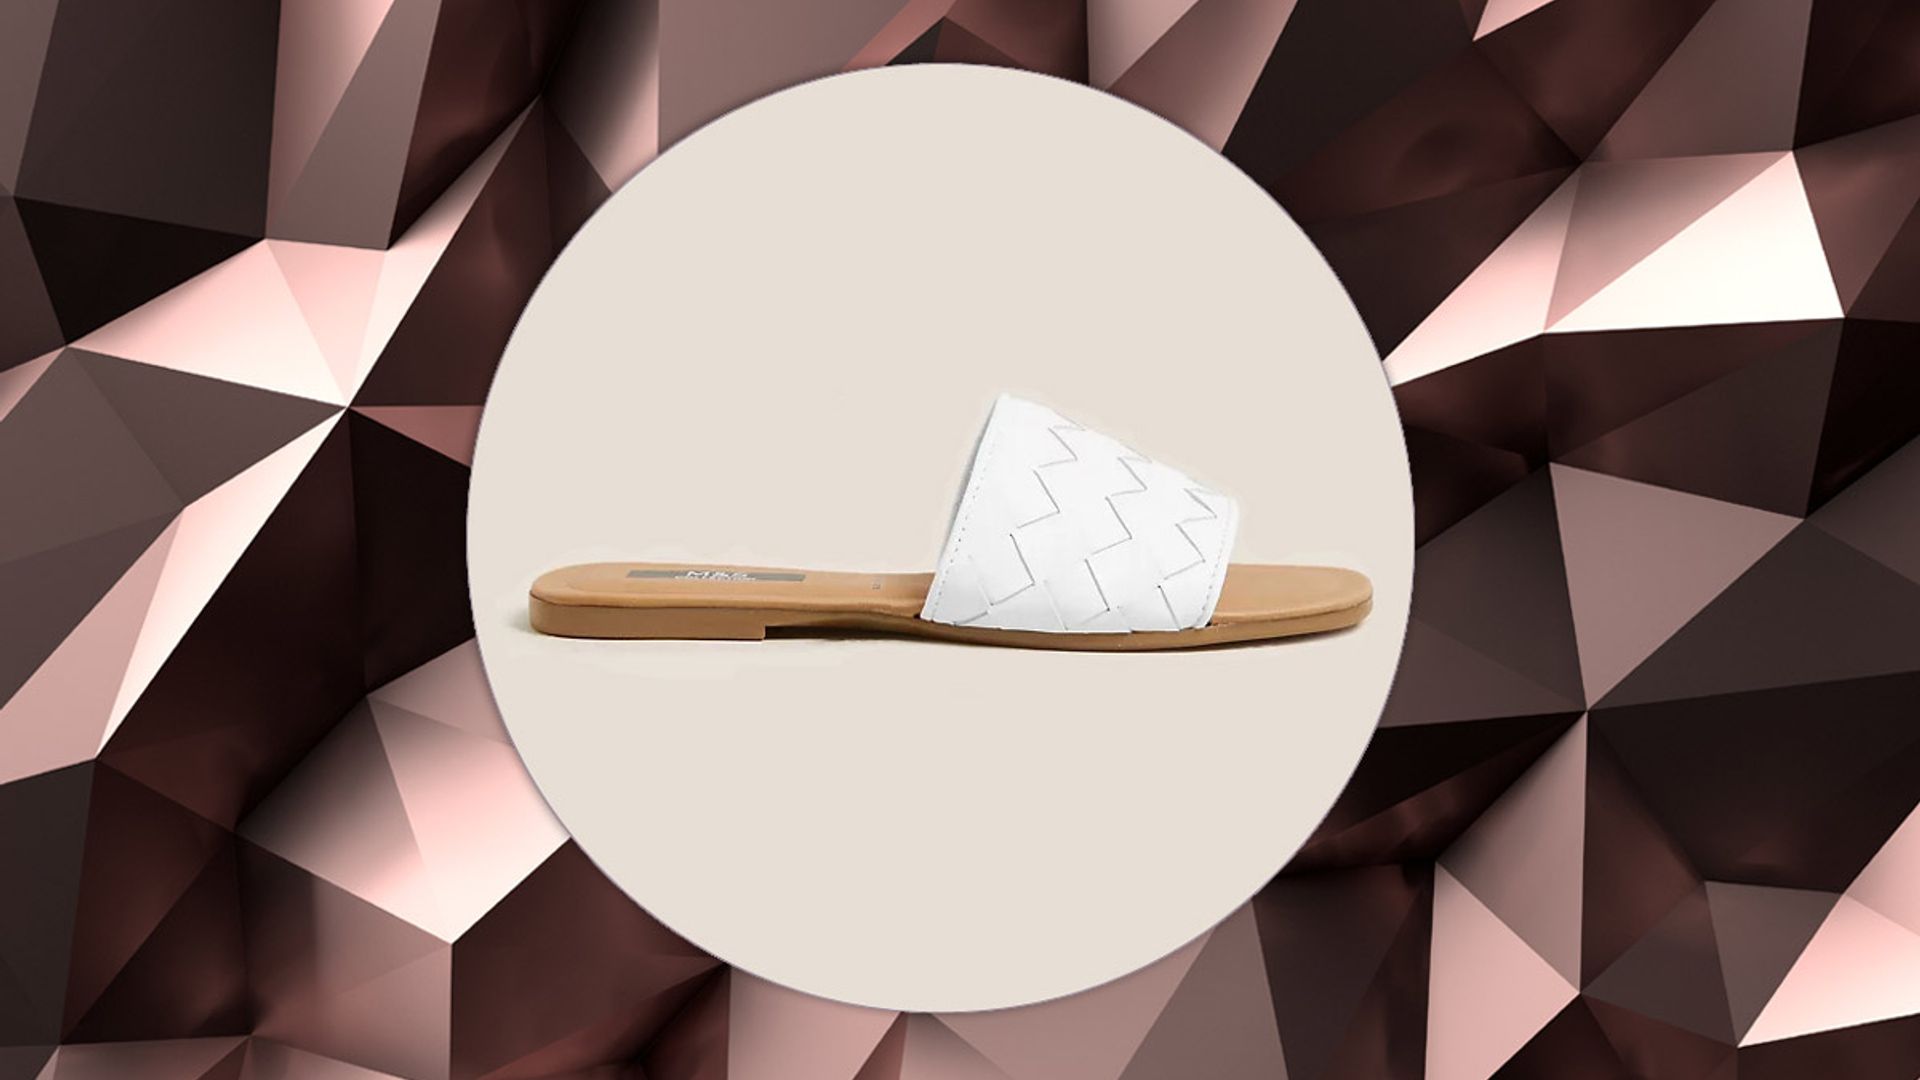 Marks & Spencer’s new woven sandals are giving us major Bottega Veneta vibes